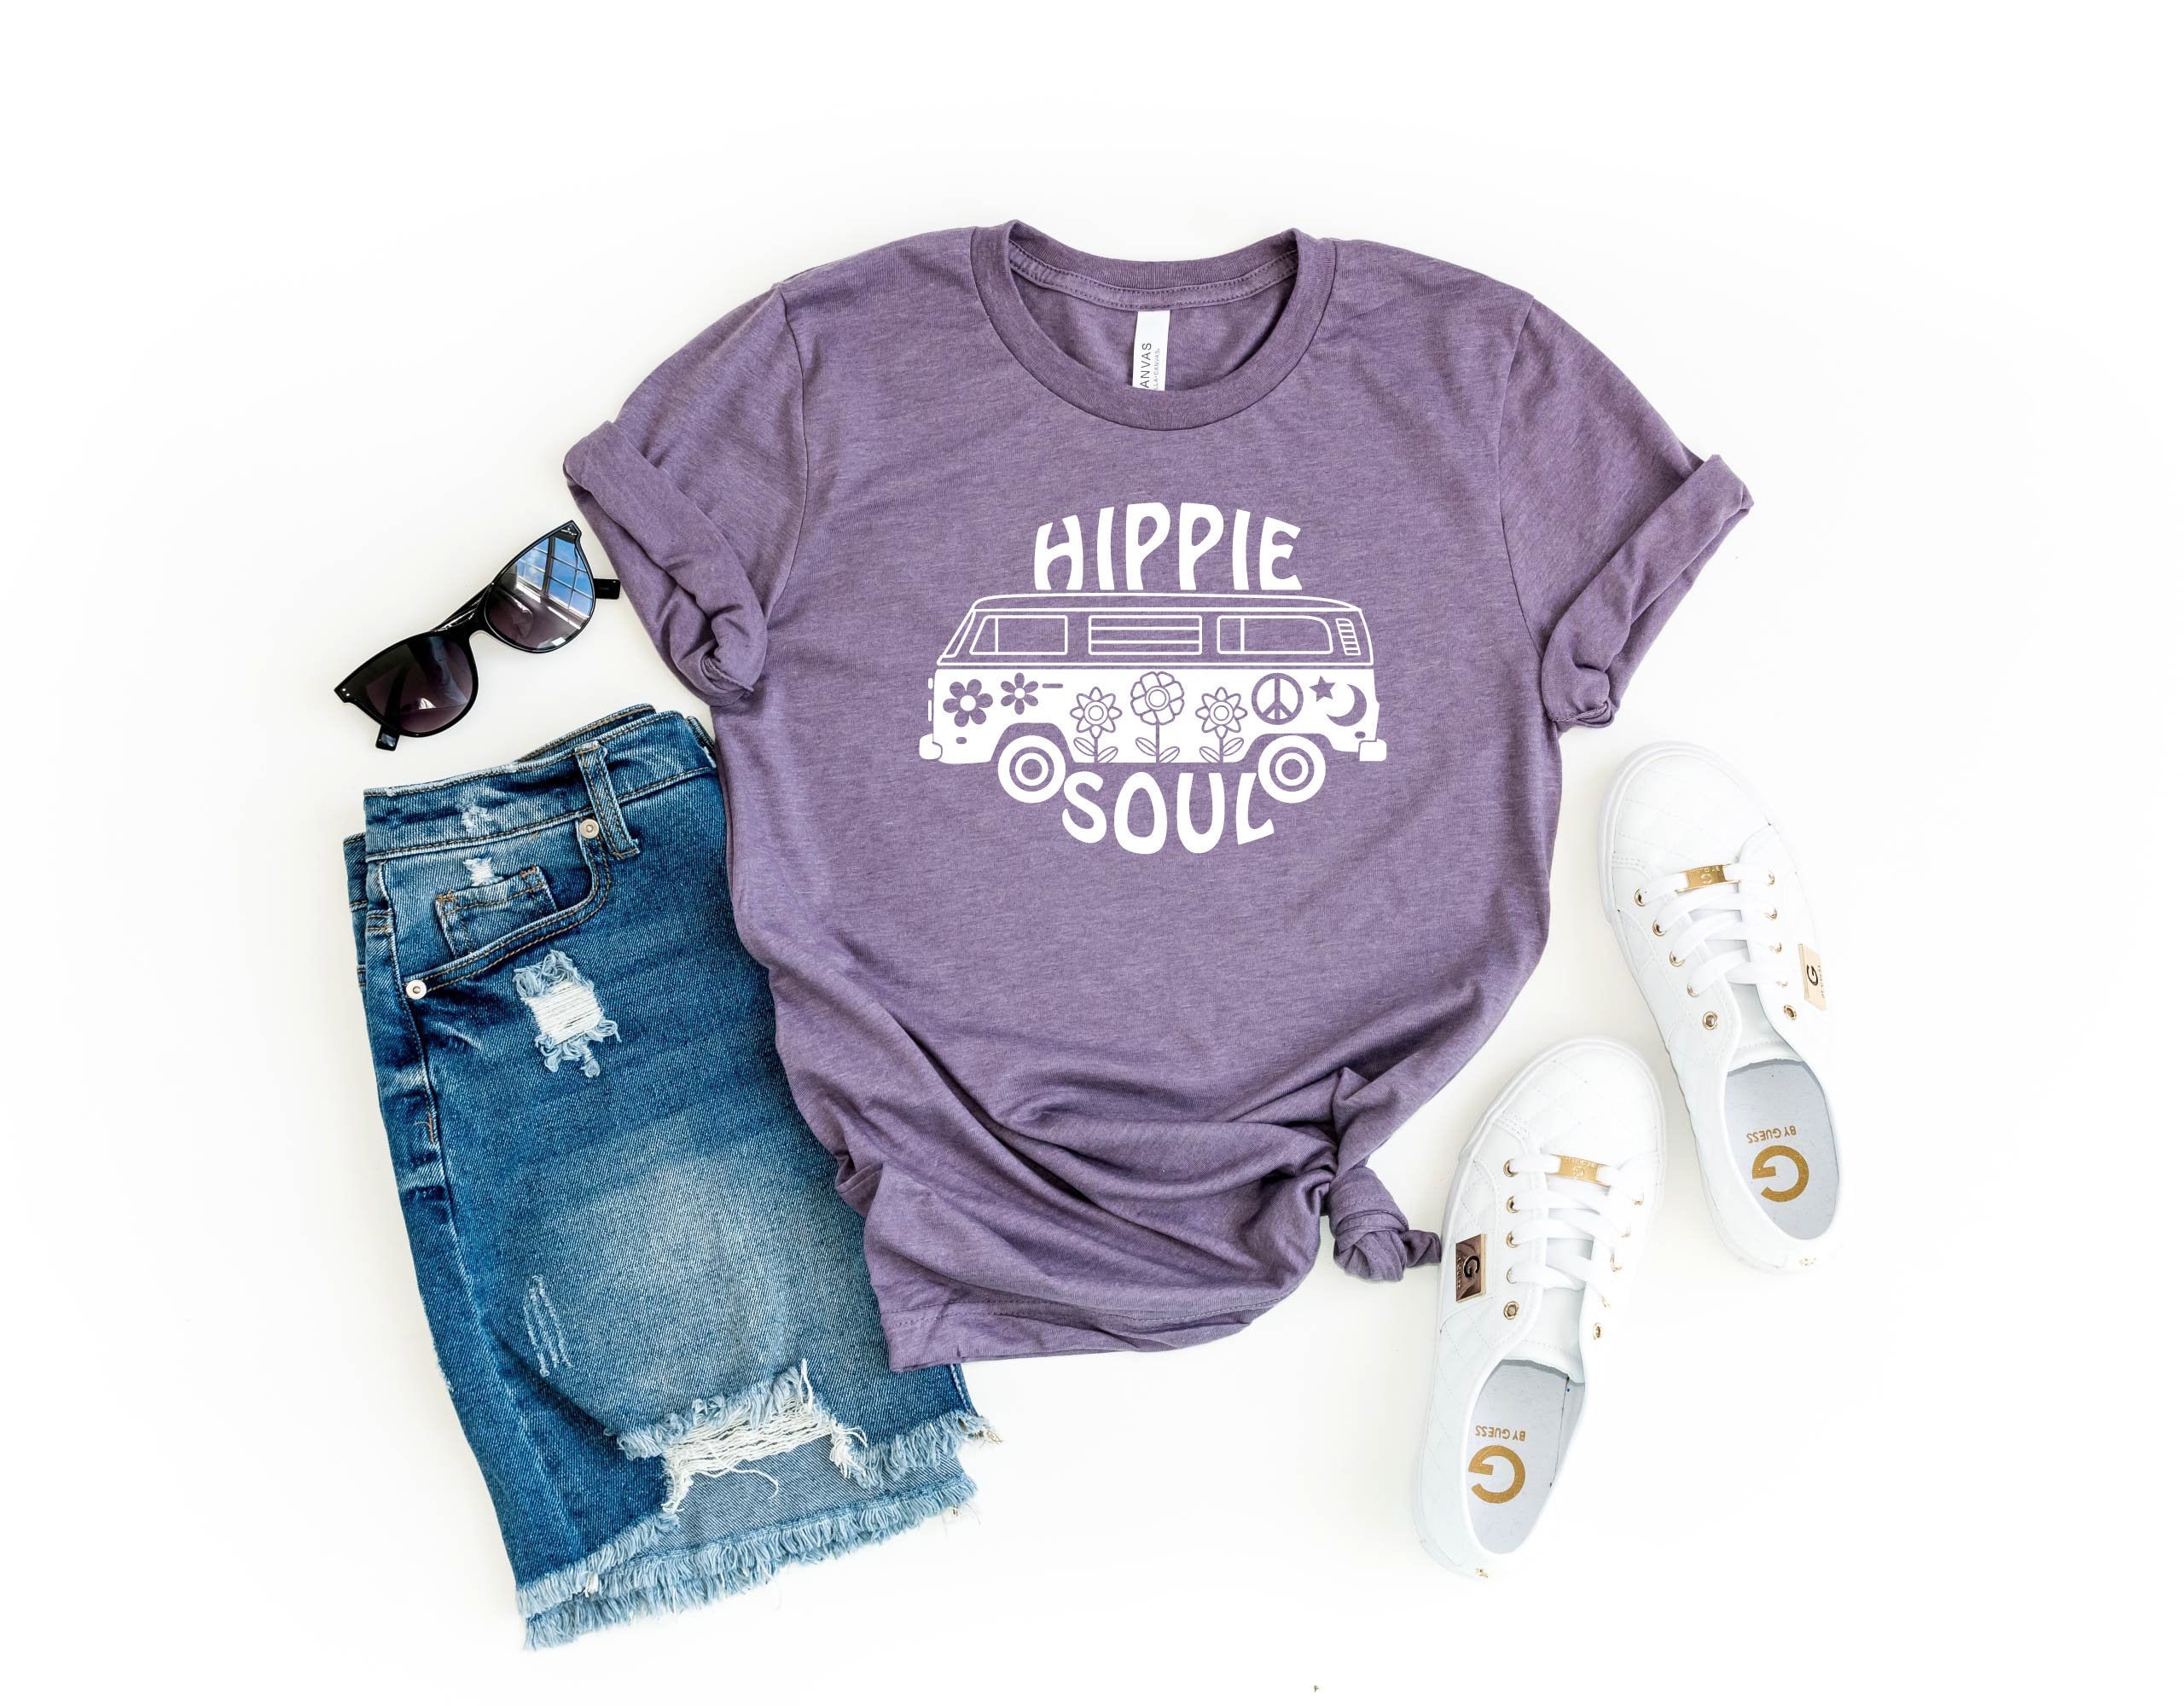 Hippie Shirt Boho Shirt Hippie Soul Shirt Hippie Graphic Tee C-13012135 Novelty Shirt